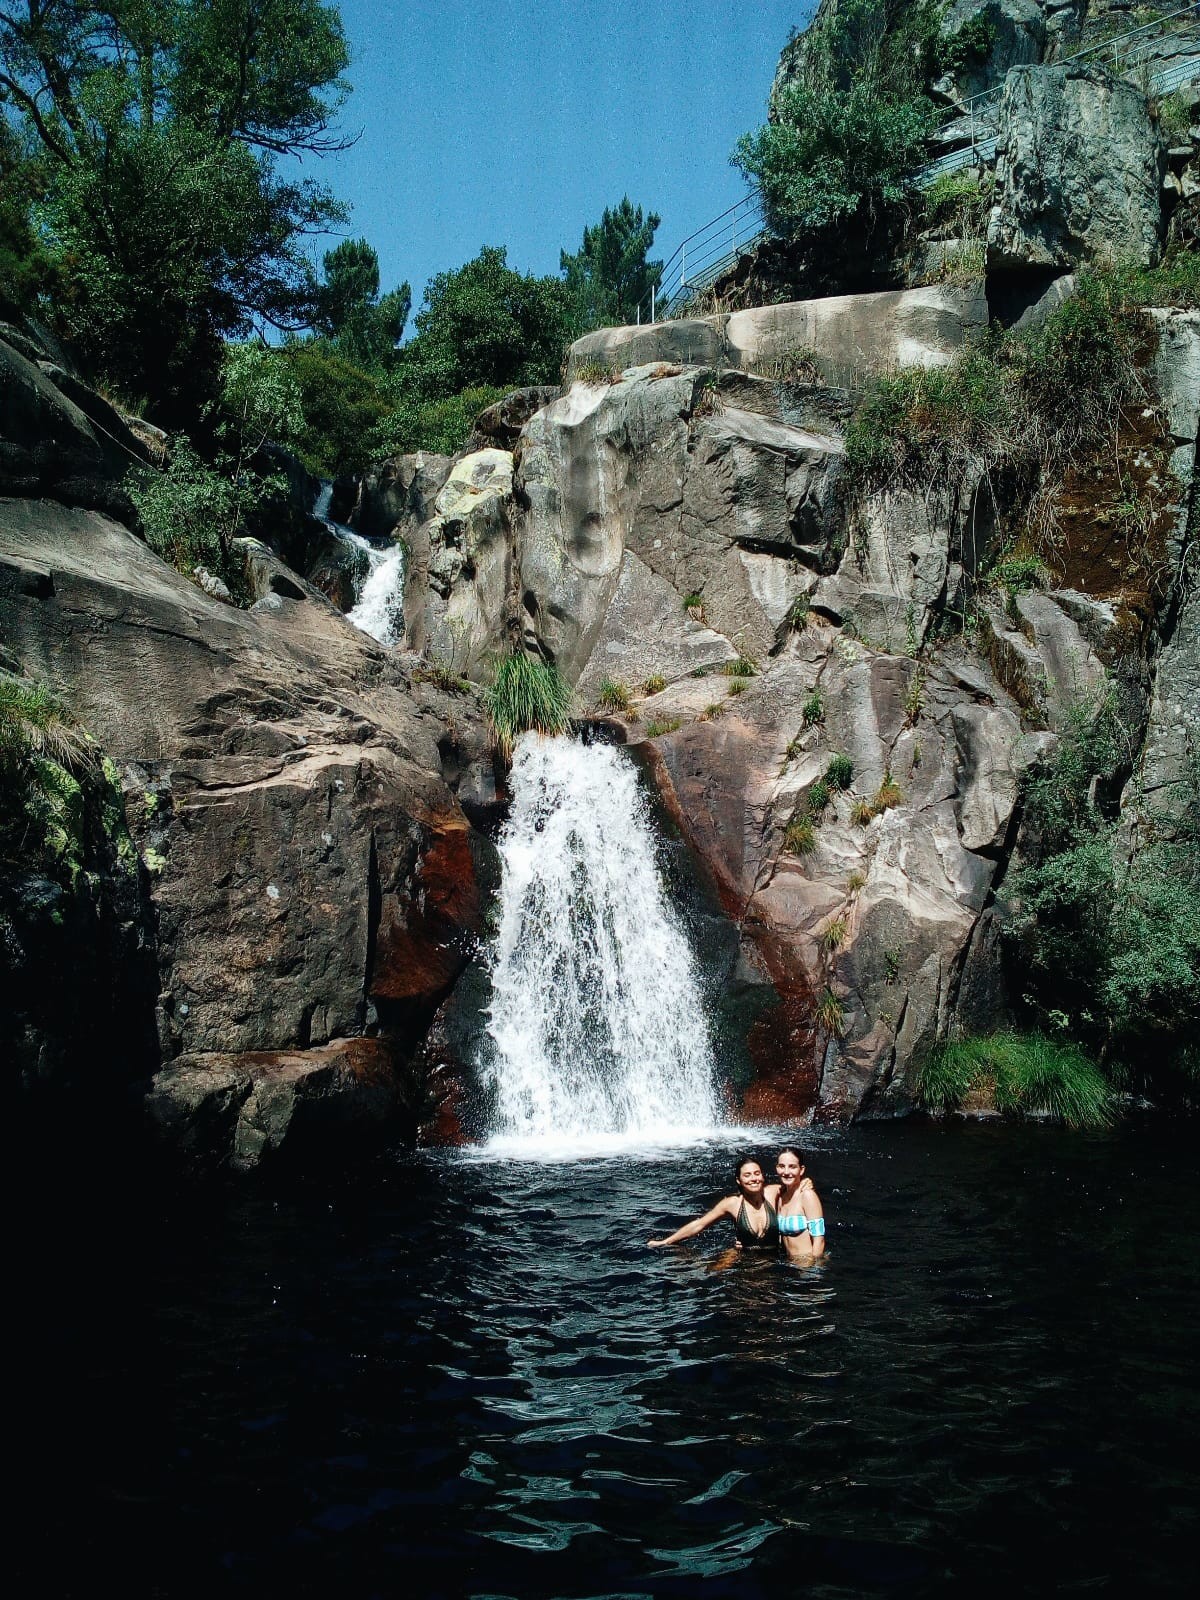 Es barato Hobart bahía Siete cascadas en Galicia que no te puedes perder | Blog Erasmus Pontevedra,  España